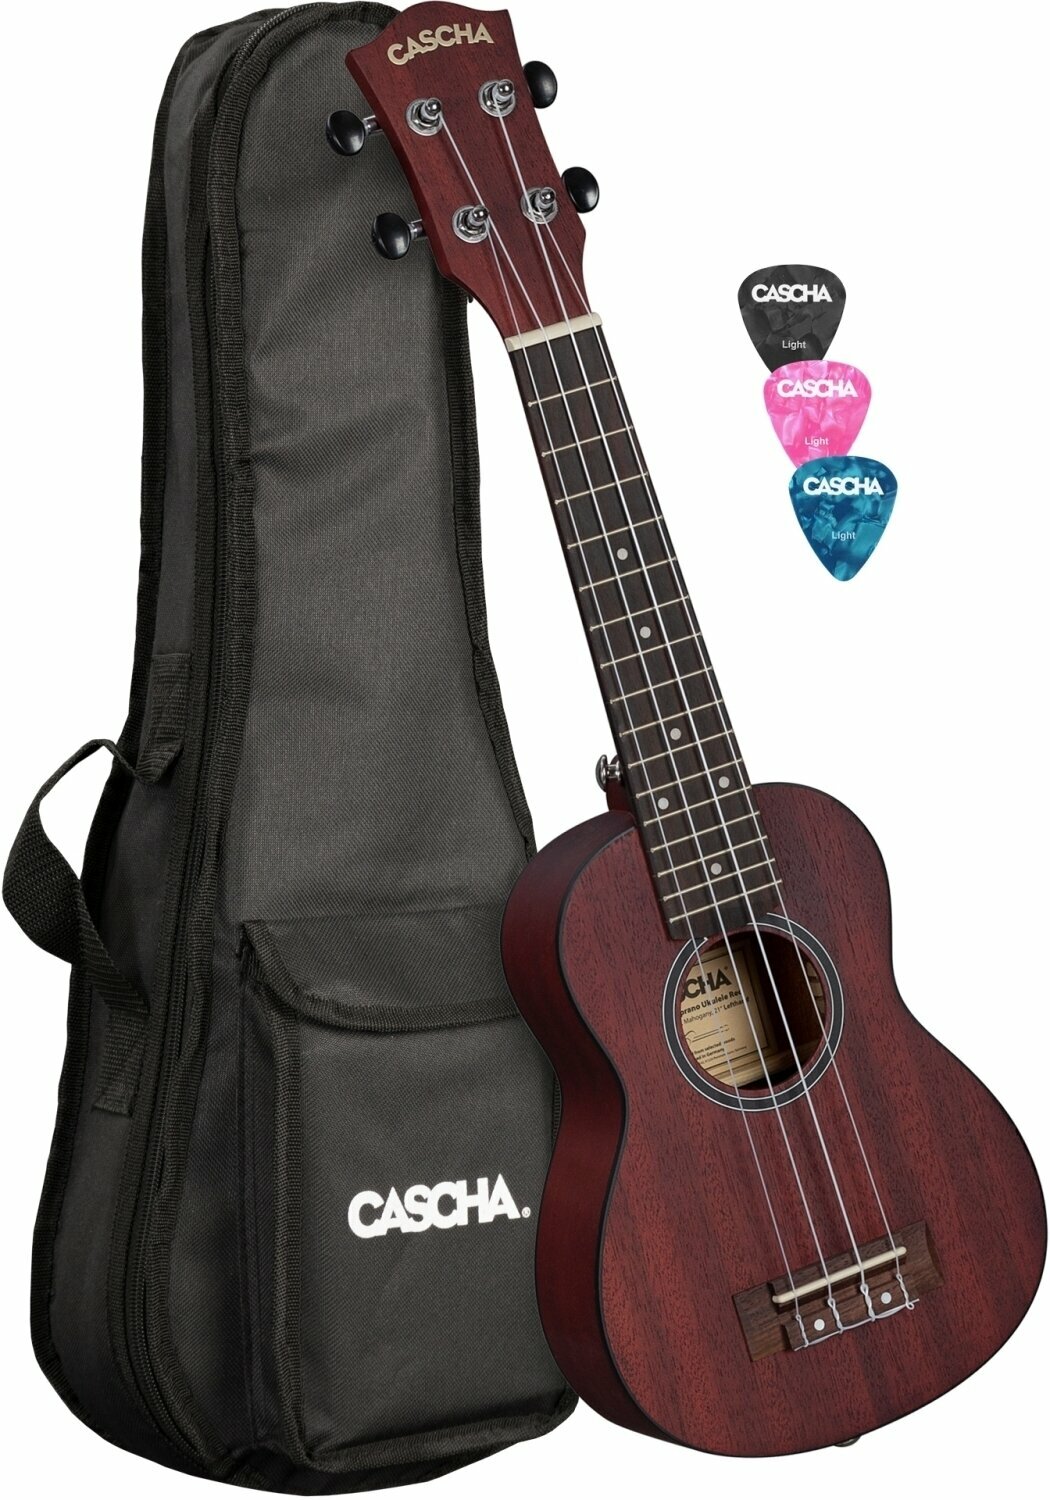 Szoprán ukulele Cascha HH 2263L Szoprán ukulele Red